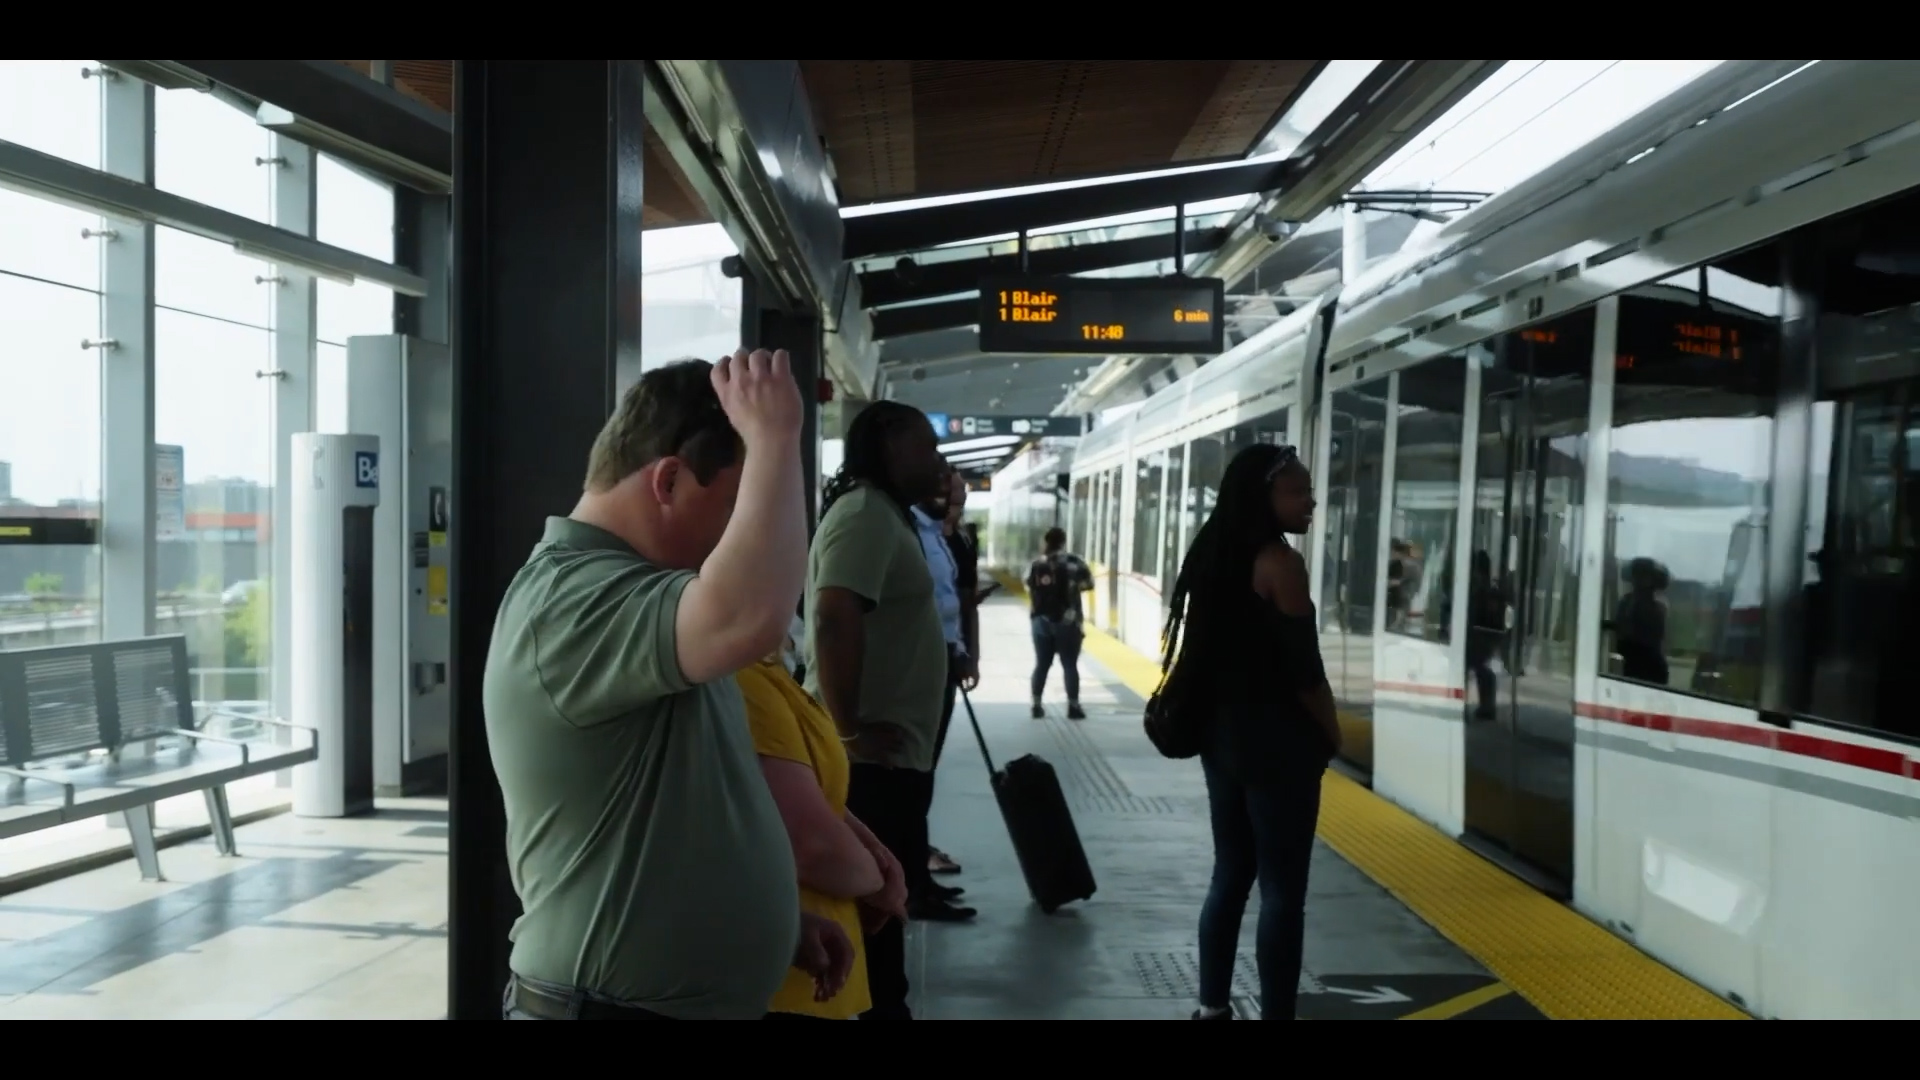 Capture d'écran de la minute 01:15 de la vidéo montrant Daniel et Lisa prendre place dans l'0-Train.